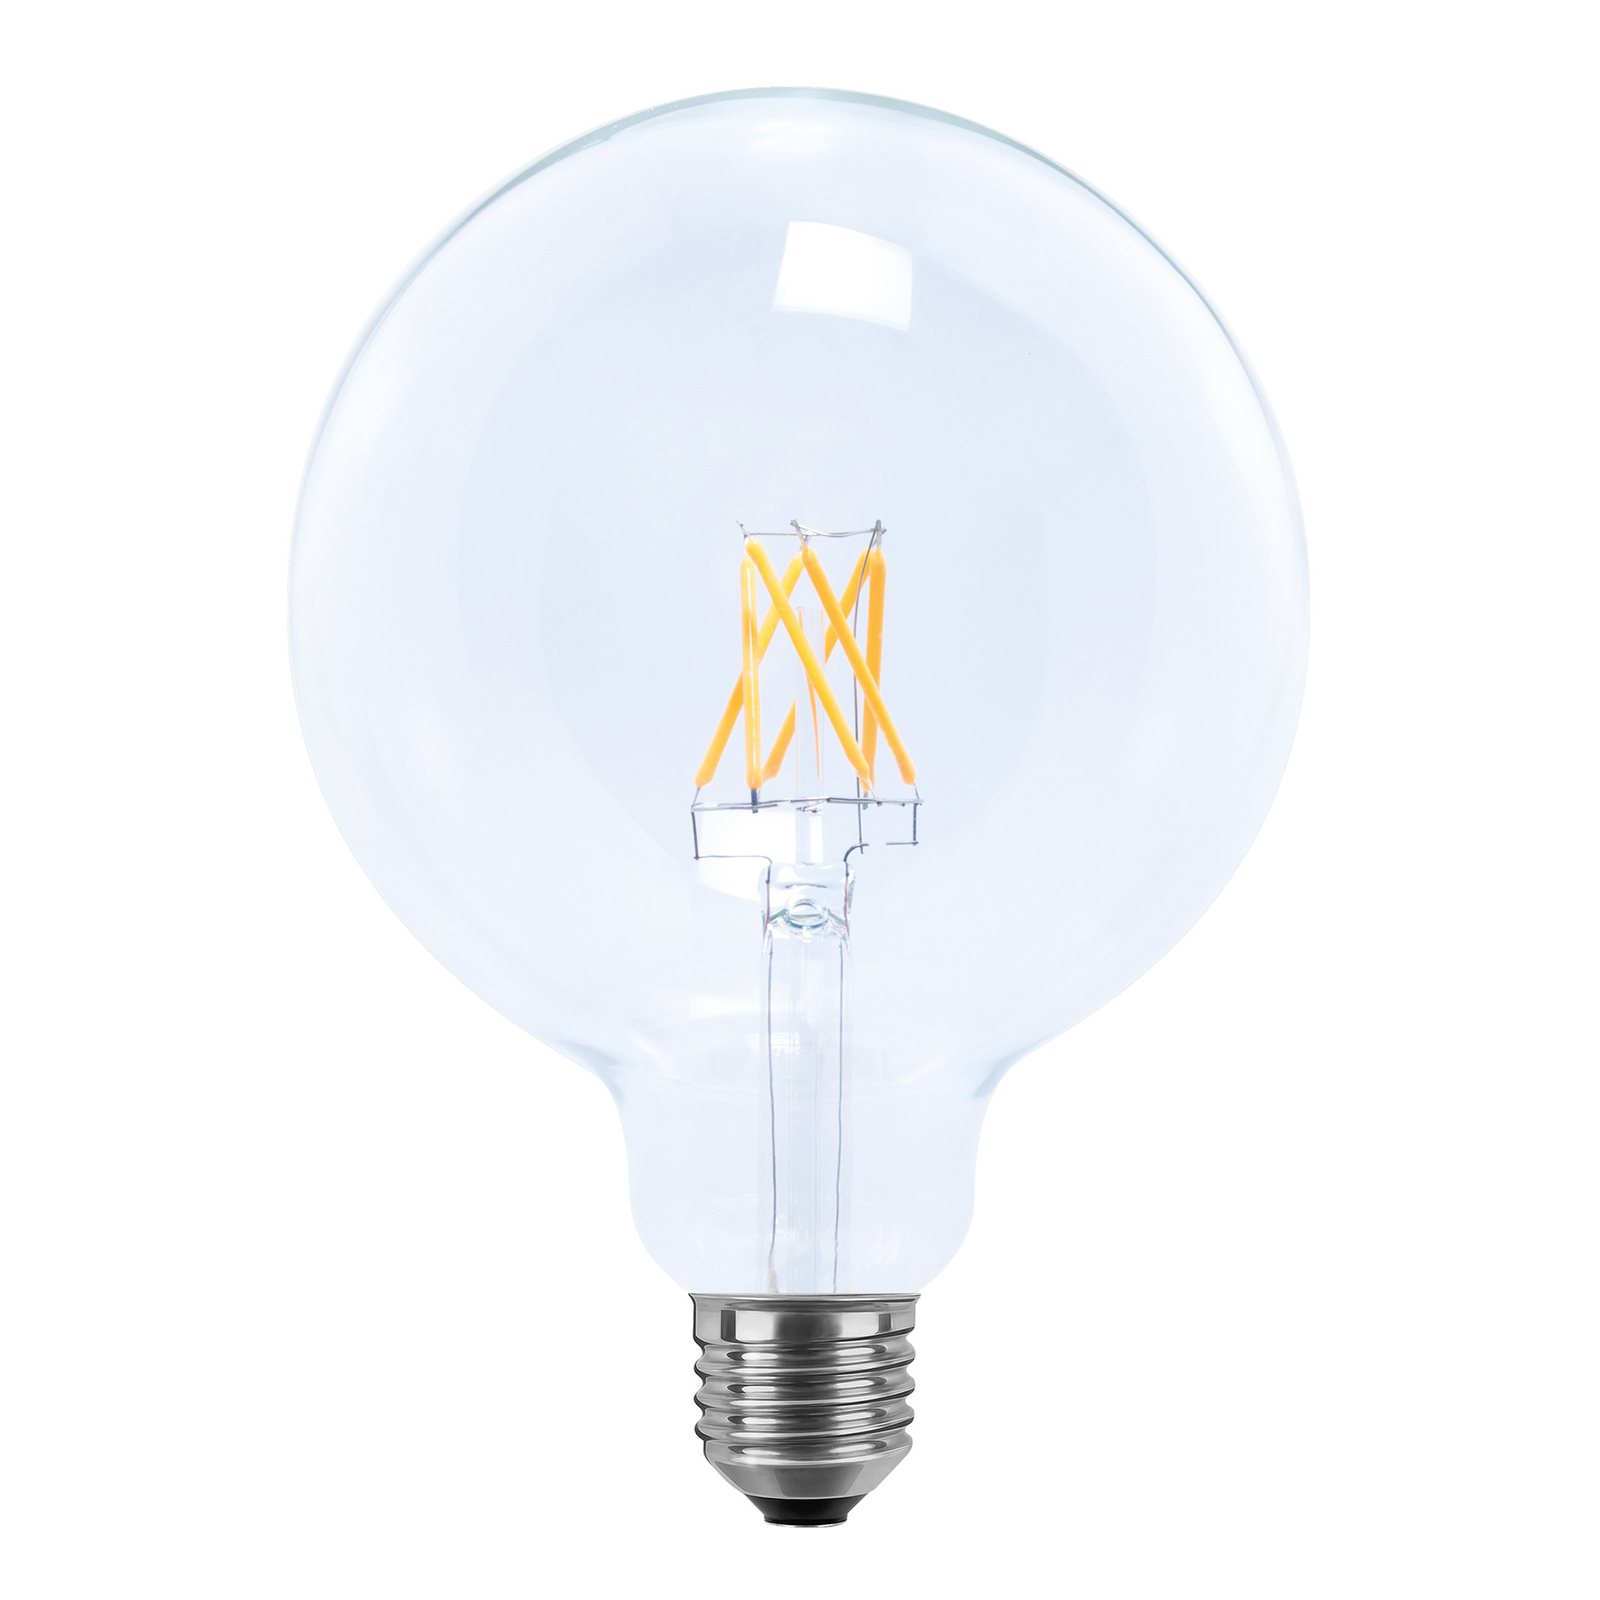 SEGULA LED žiarovka Globe 24V E27 6W 927 filament